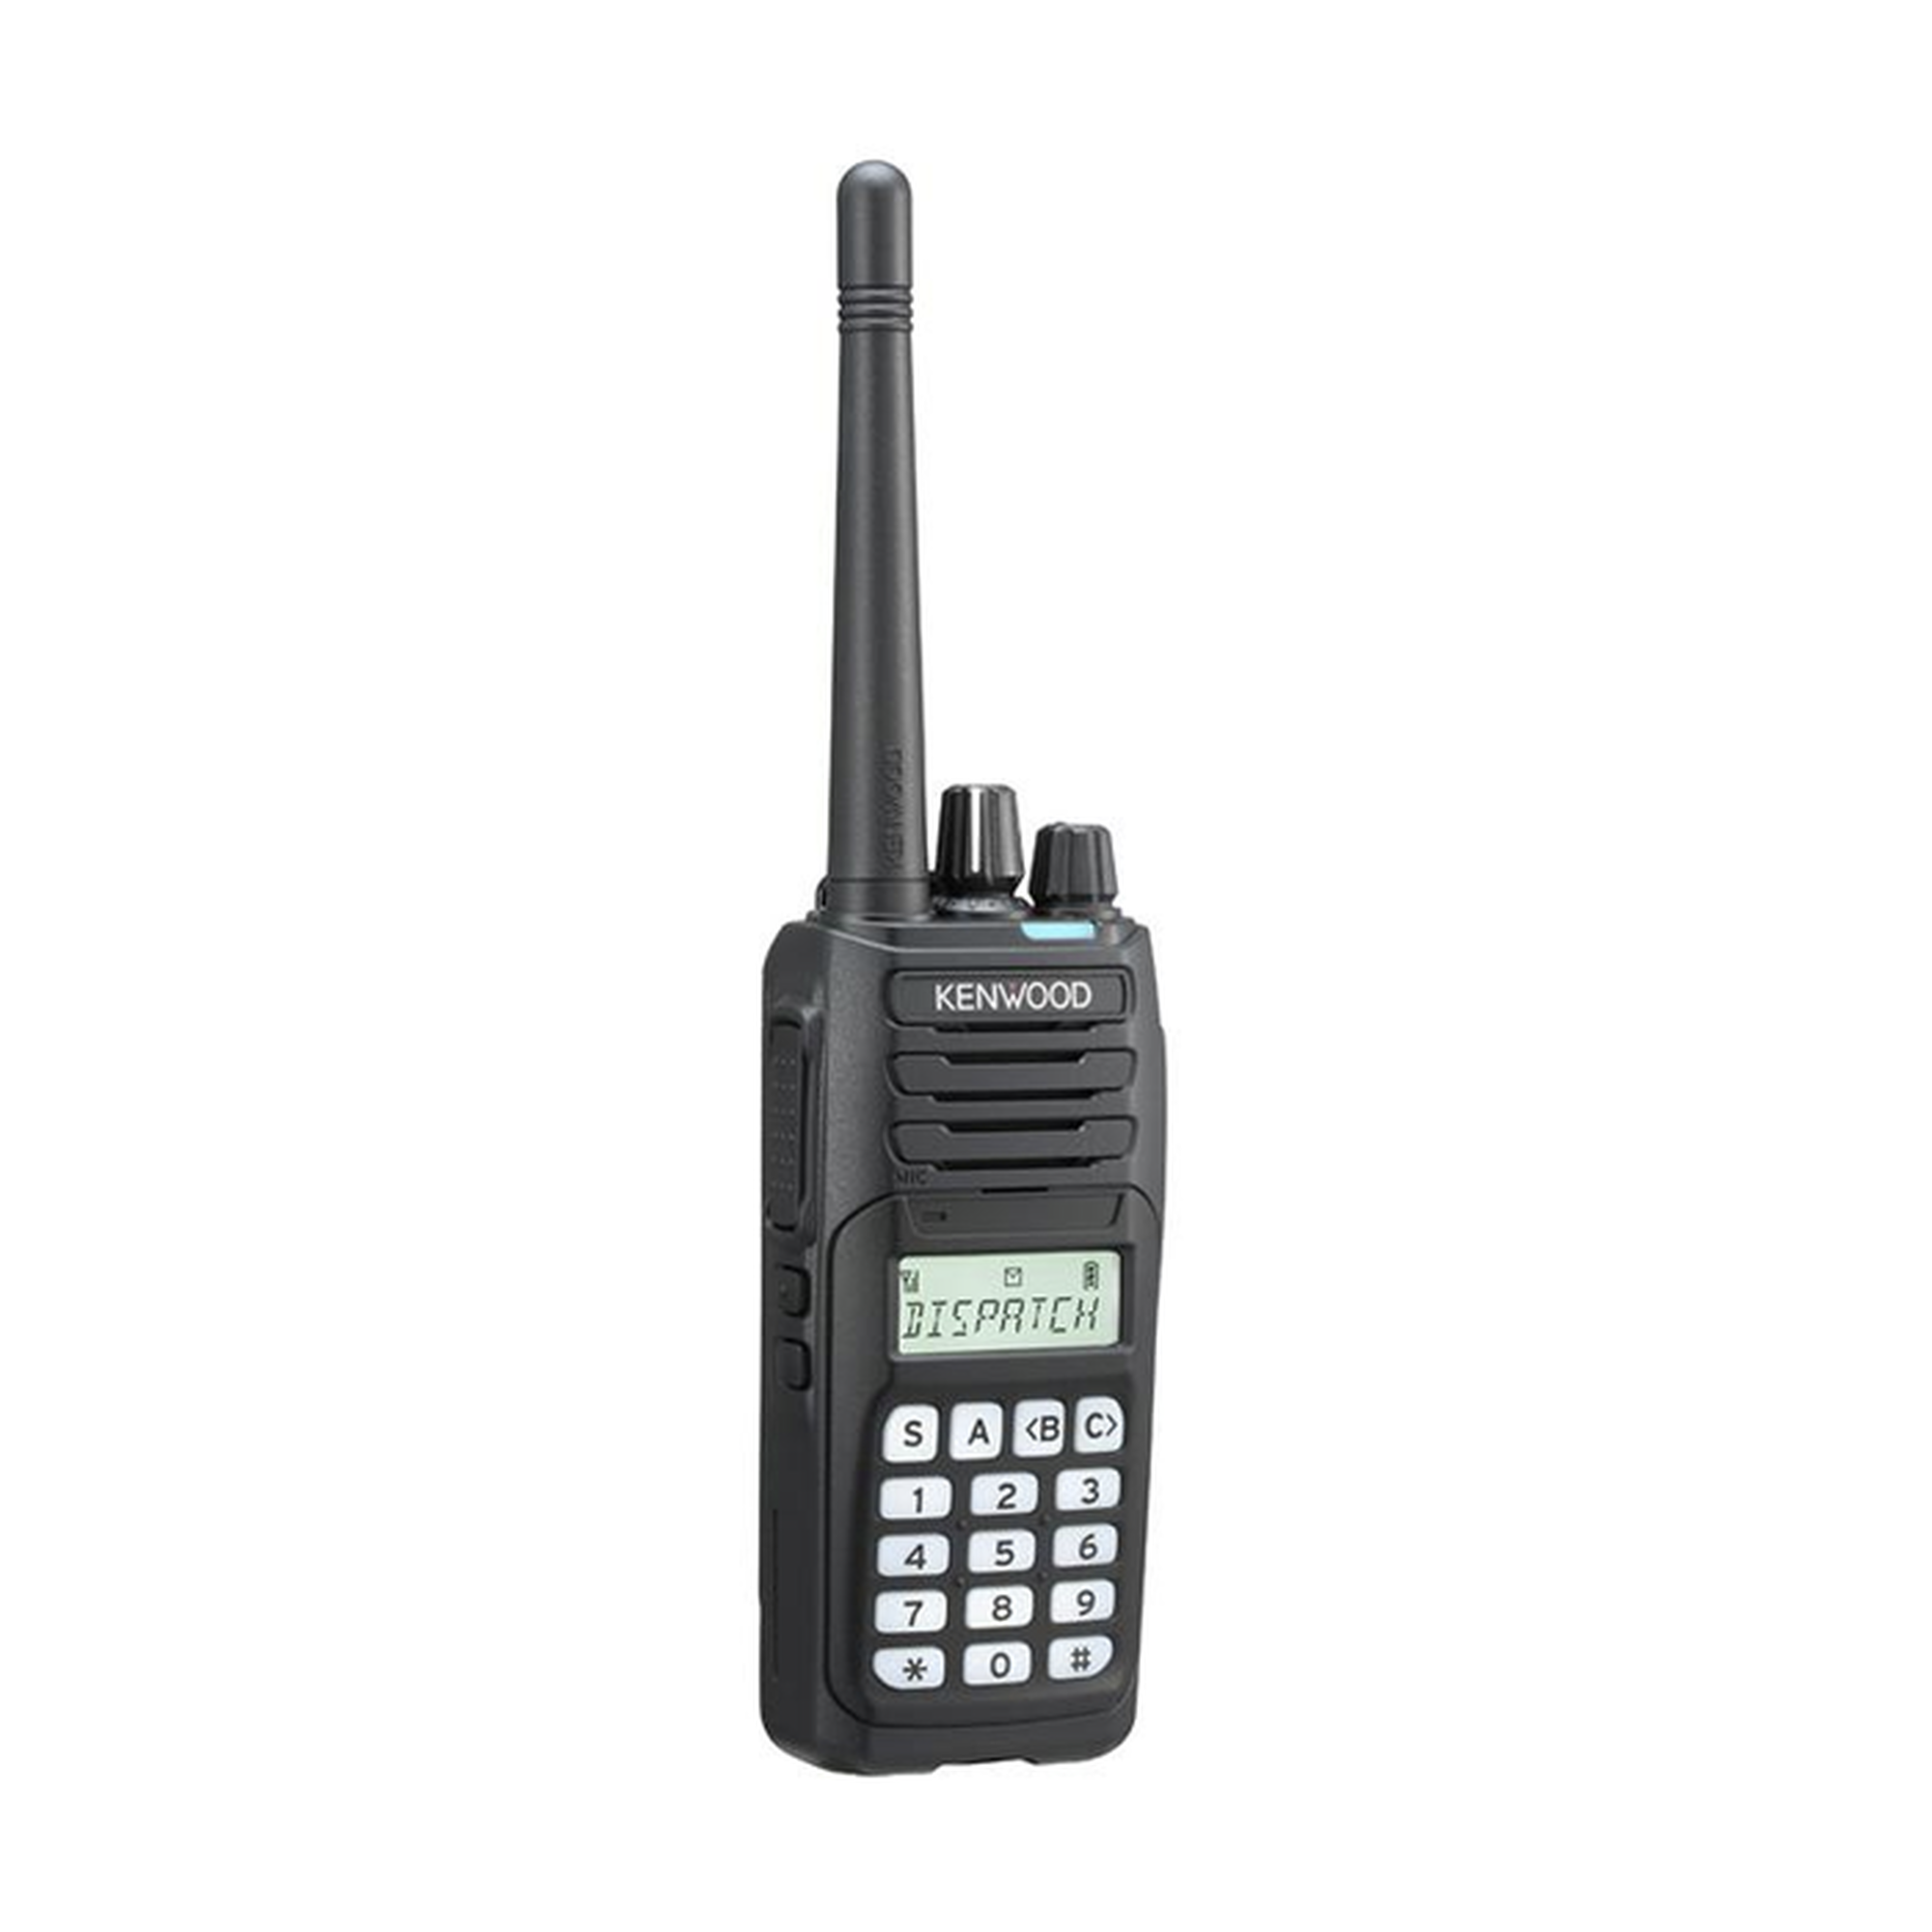 136-174 MHz, Digital DMR-Analógico, DTMF, IP67, 5 Watts, 260 Canales, Roaming, Encriptación, GPS, Inc. antena, batería, cargador y clip